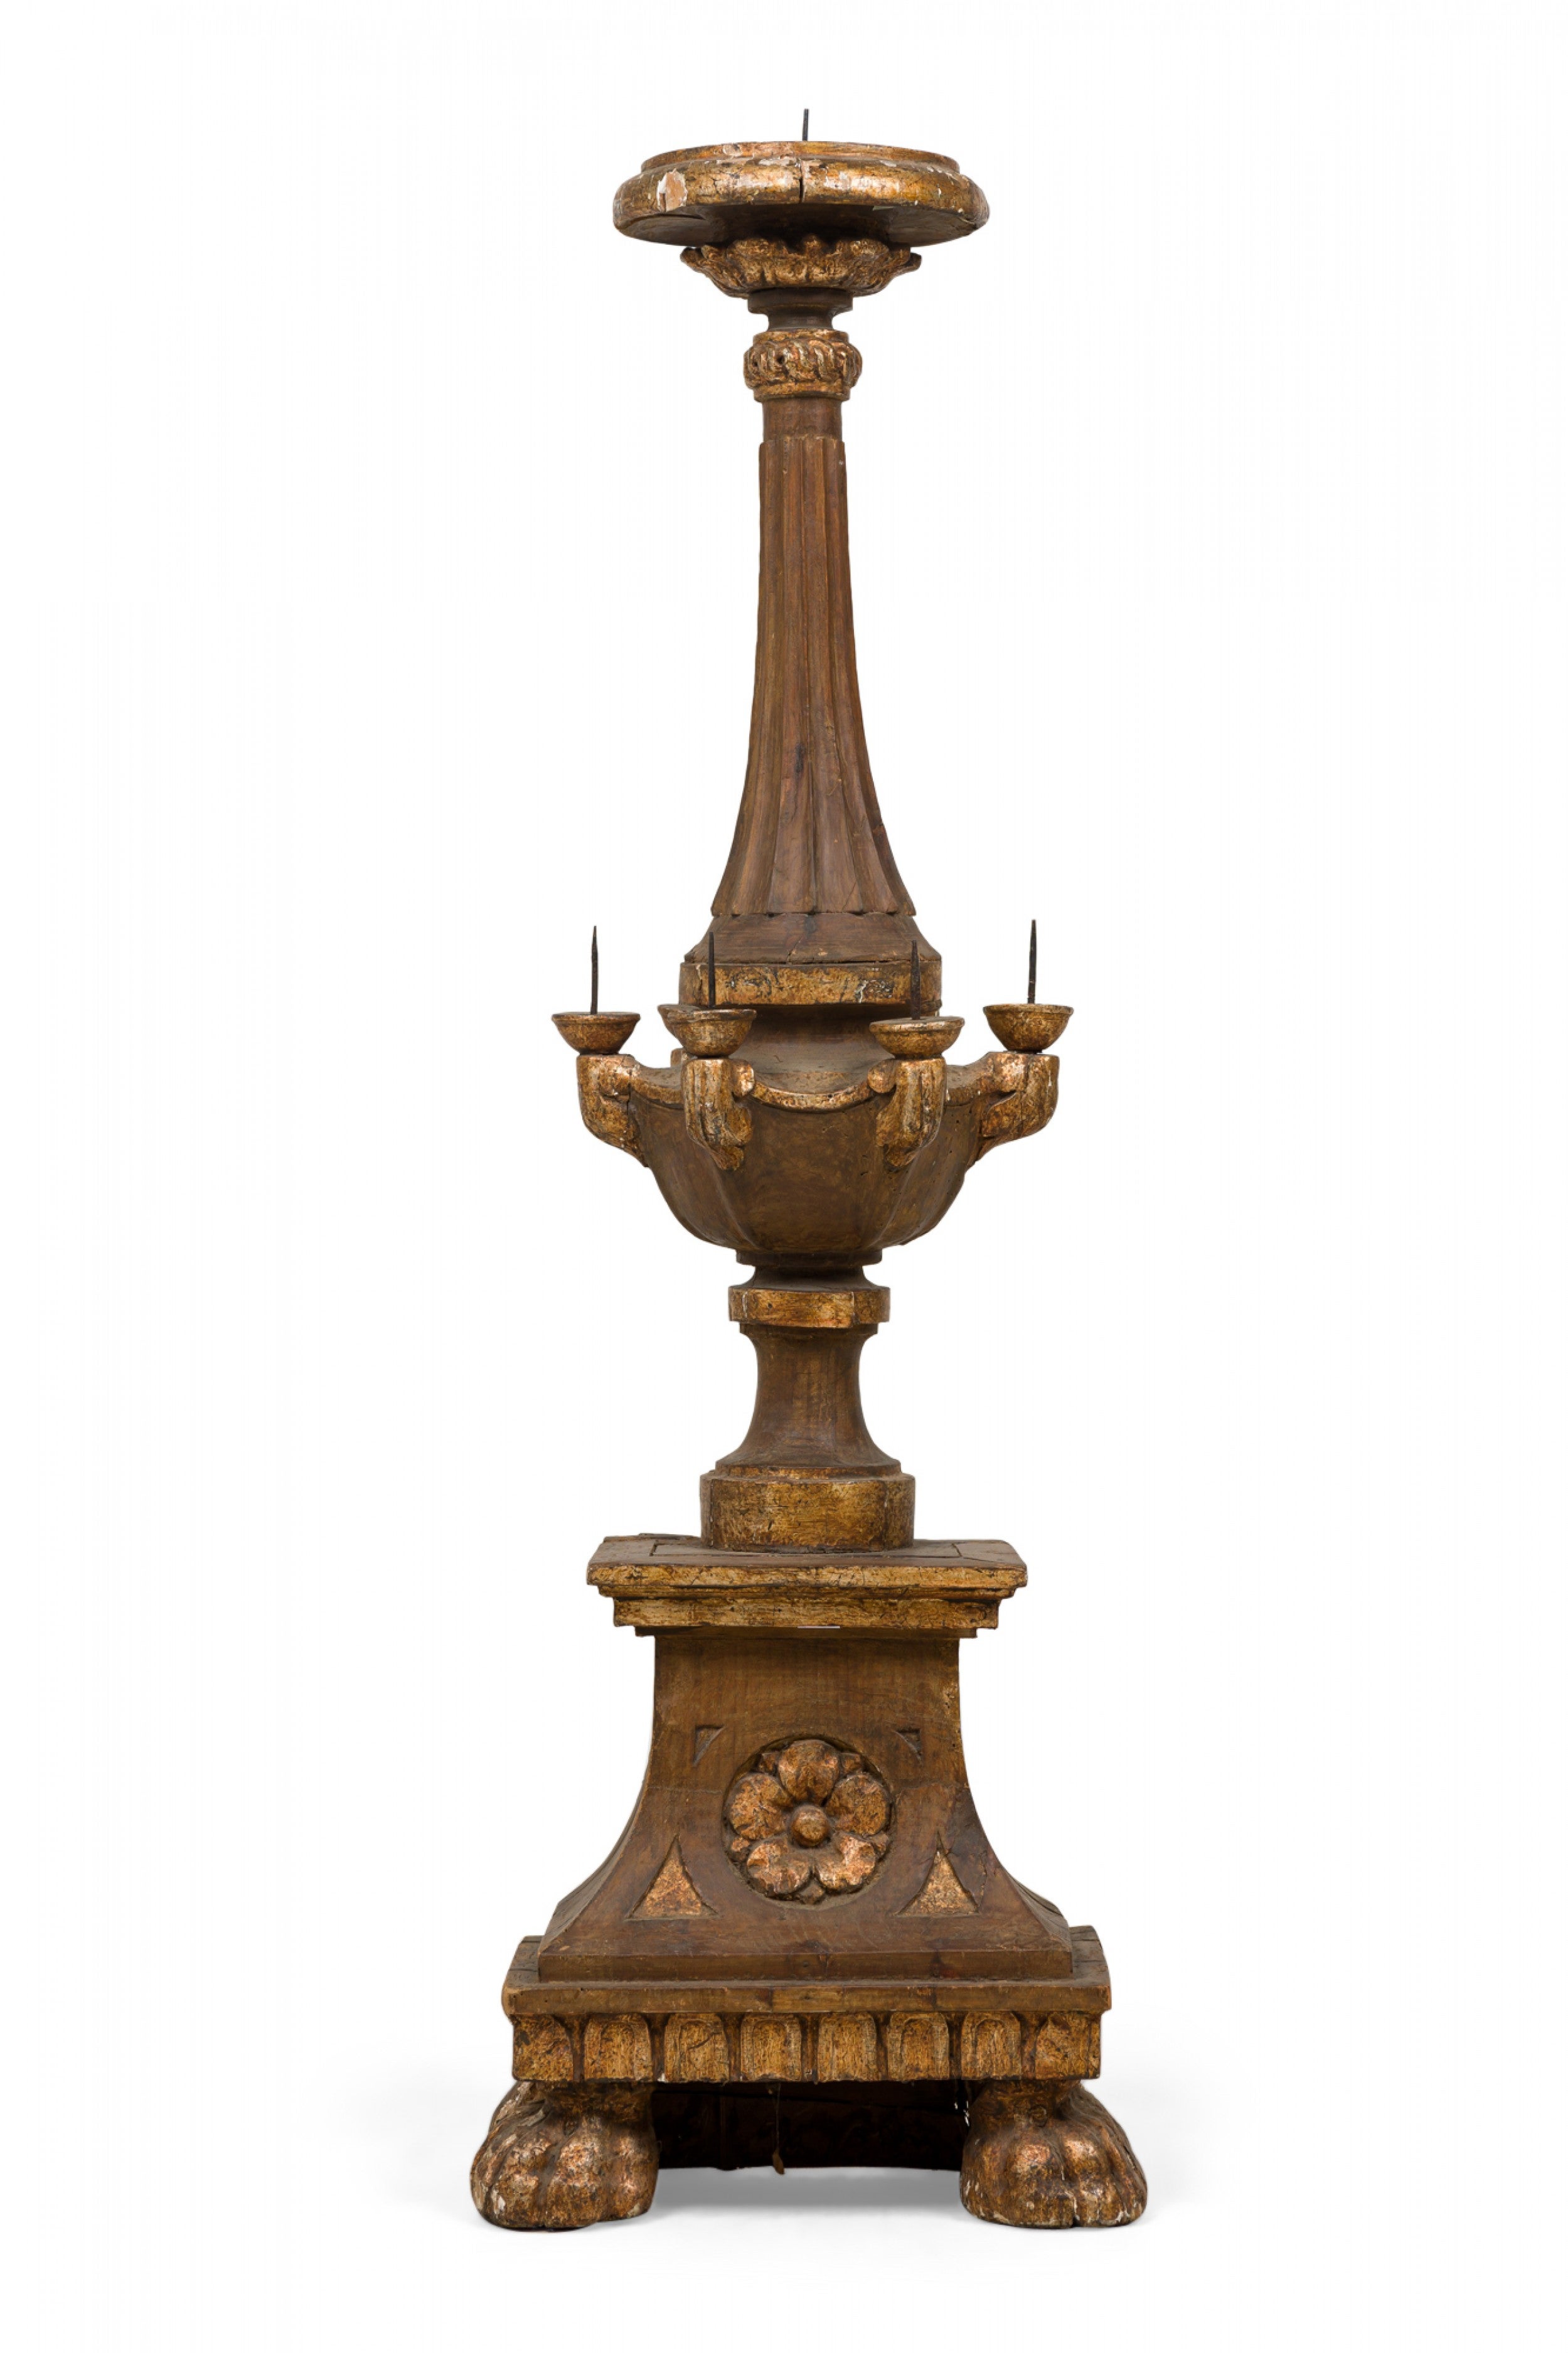 Chandelier d'autel baroque italien monumental en bois doré sculpté